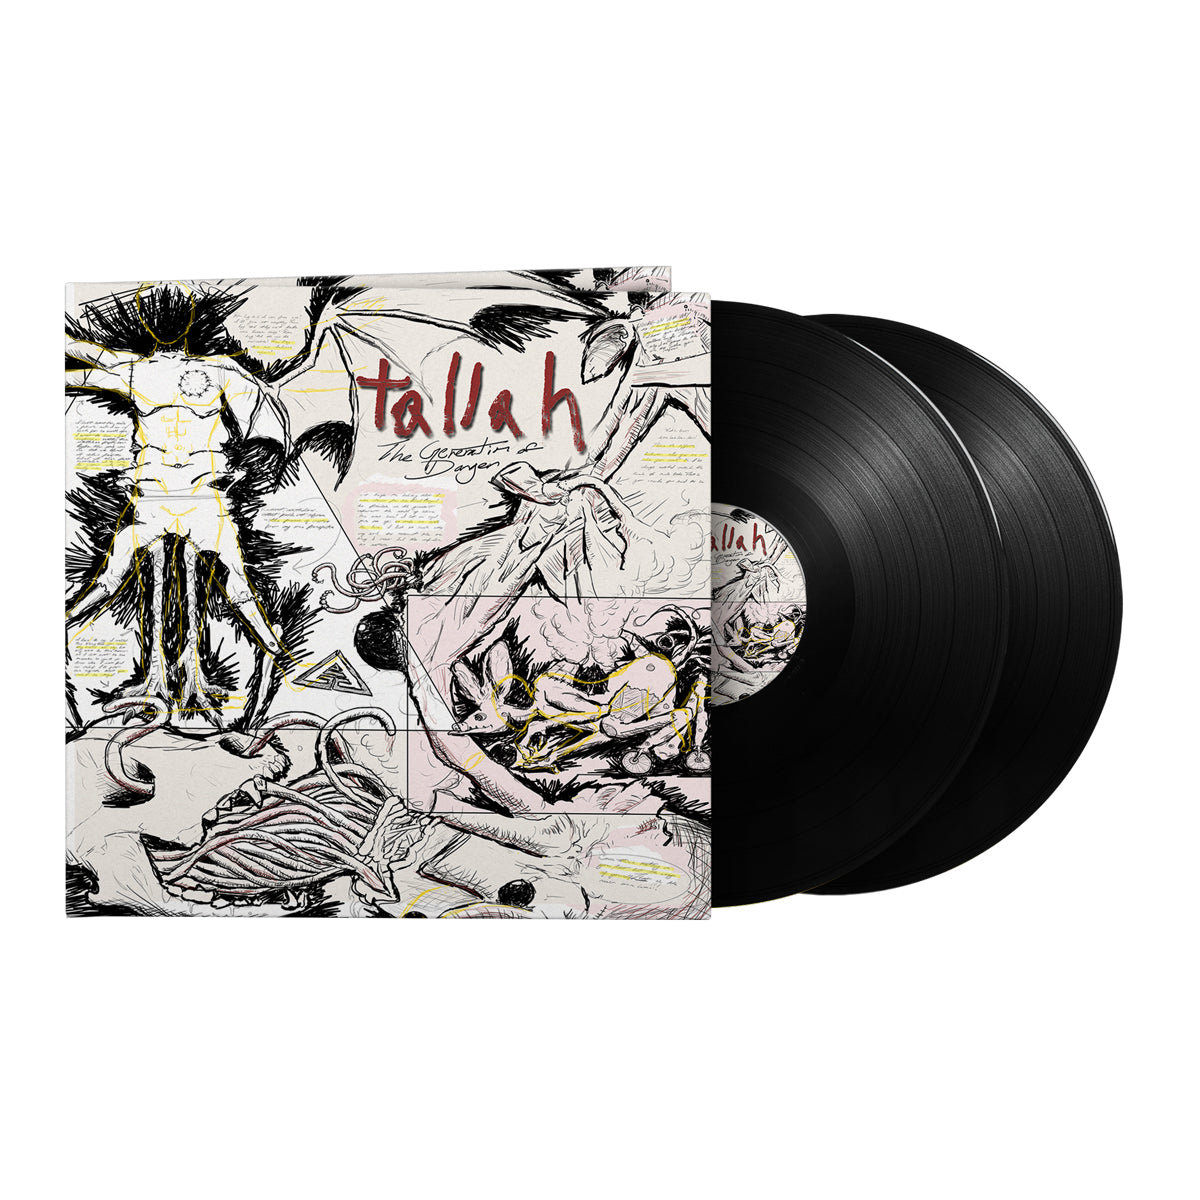 Tallah "The Generation Of Danger" Gatefold 2x12" Black Vinyl